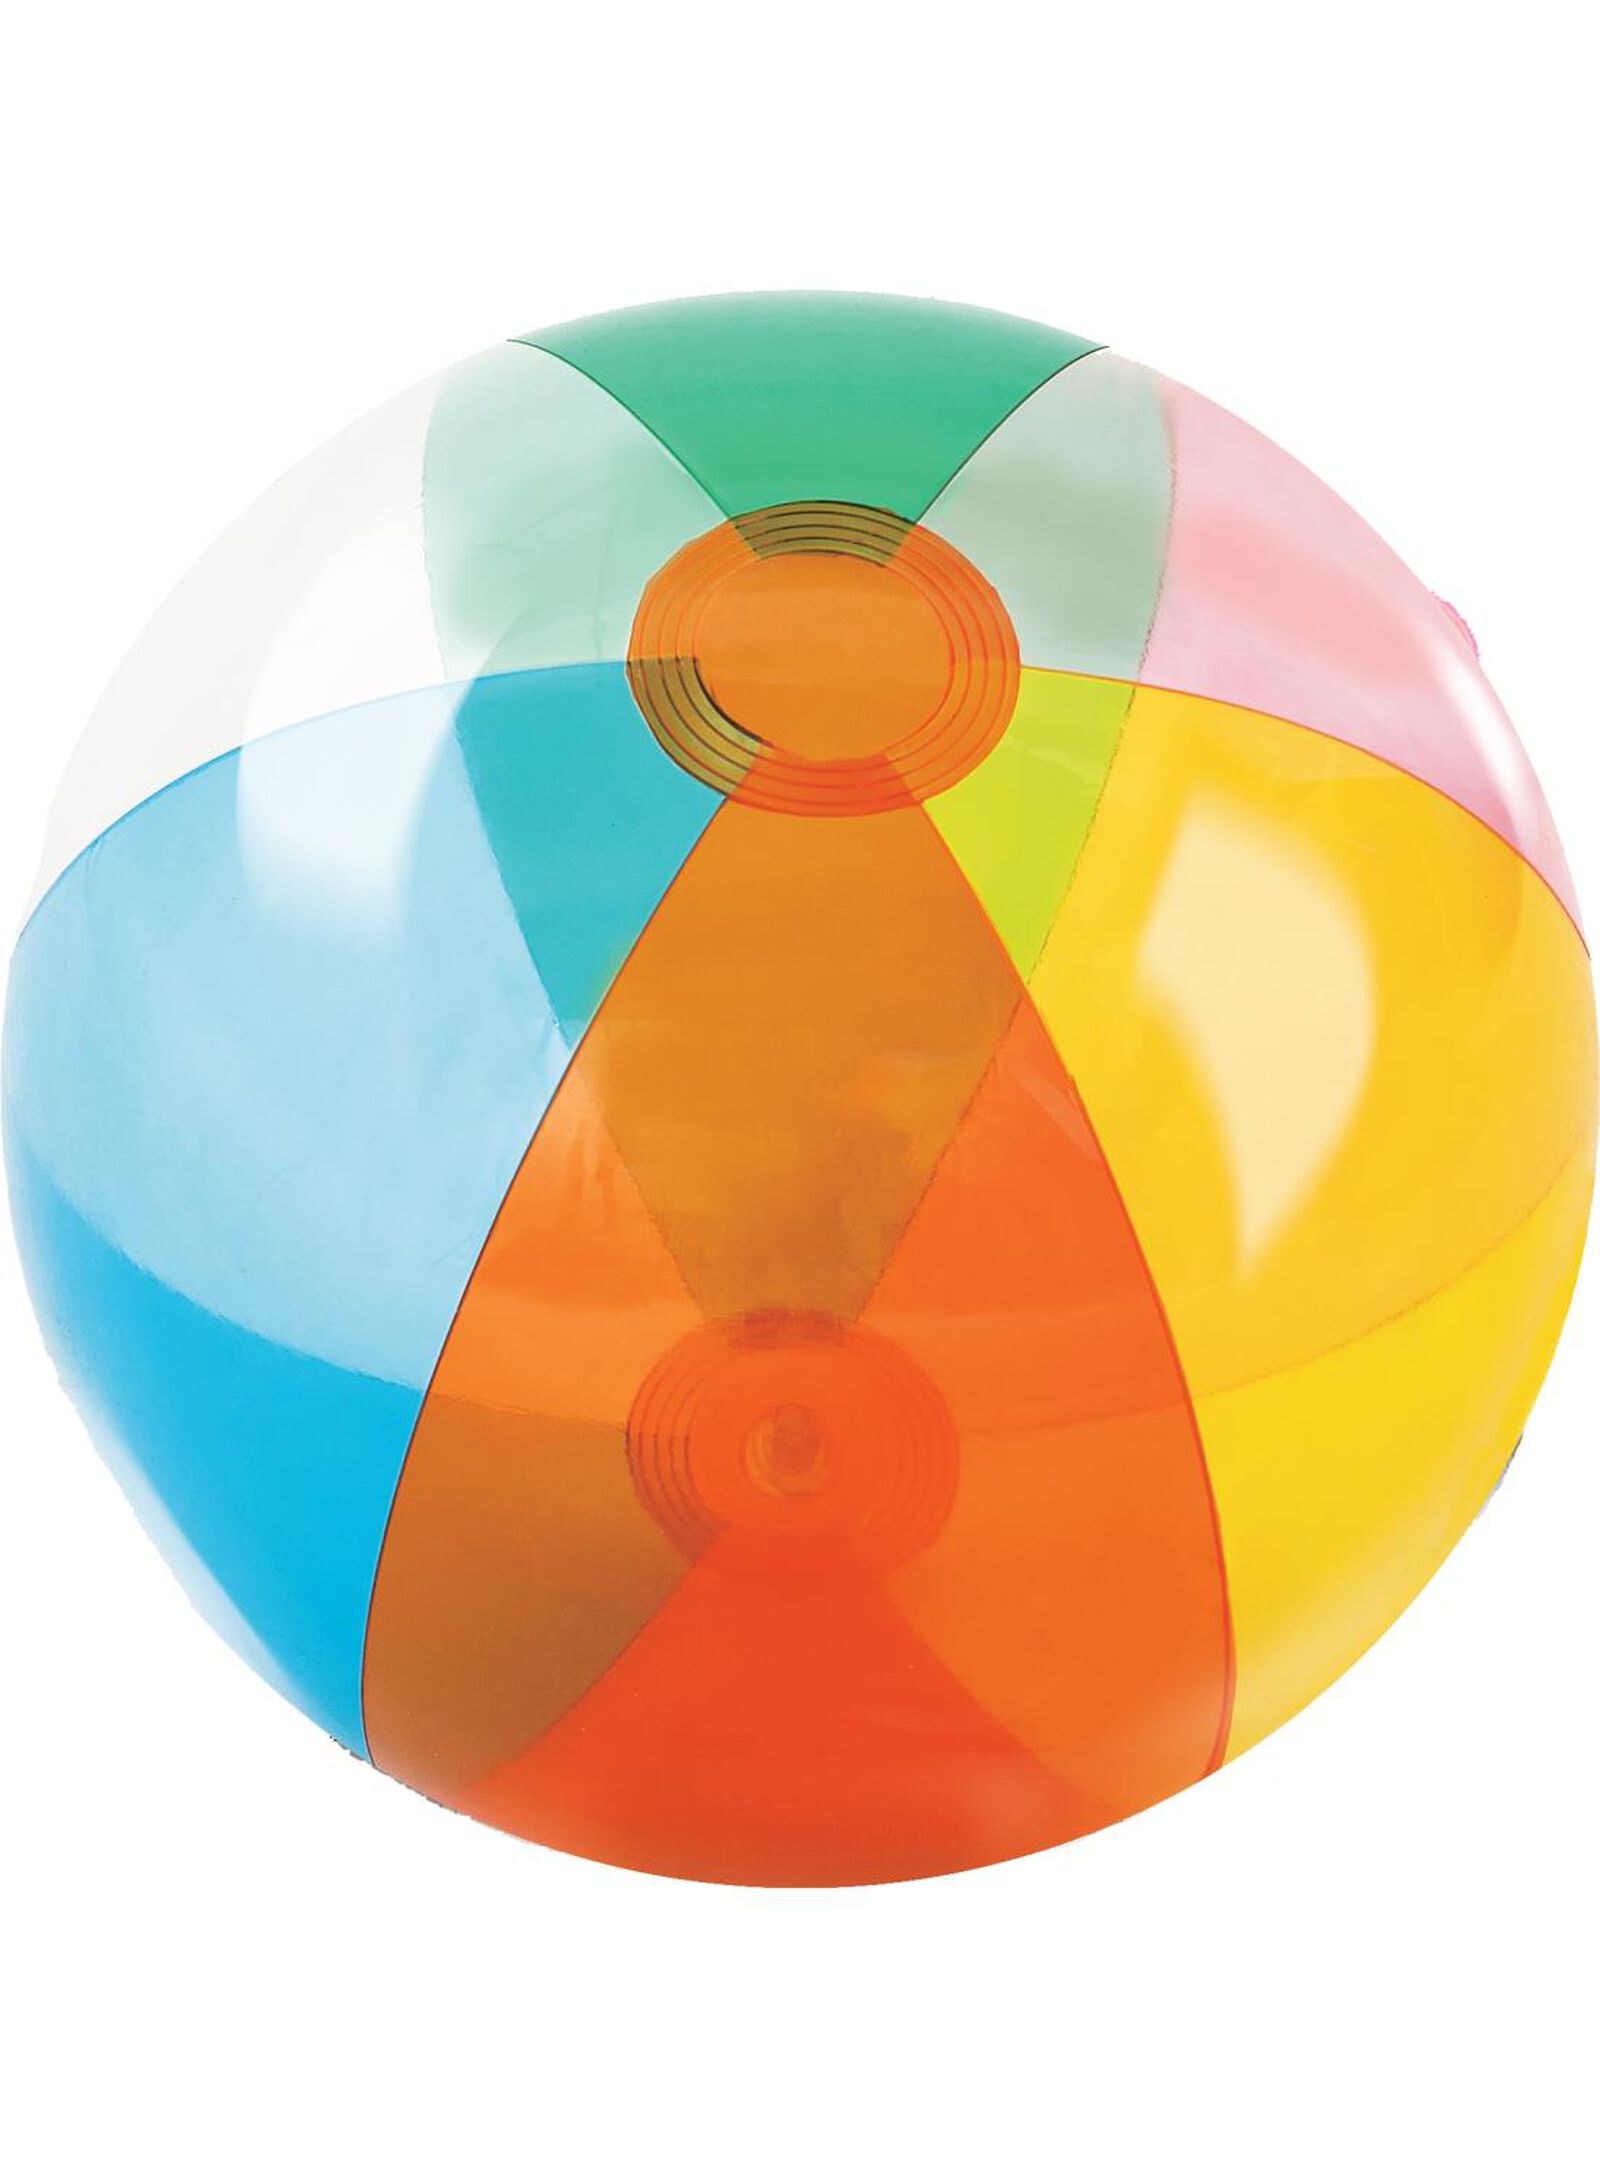 Ballon de Plage Enfant XINUY 3 Pcs, Ballon de Plage Gonflable Transparent,  Ballon de Piscine, Animal Ballons de Plage avec Flamant Rose, Licorne